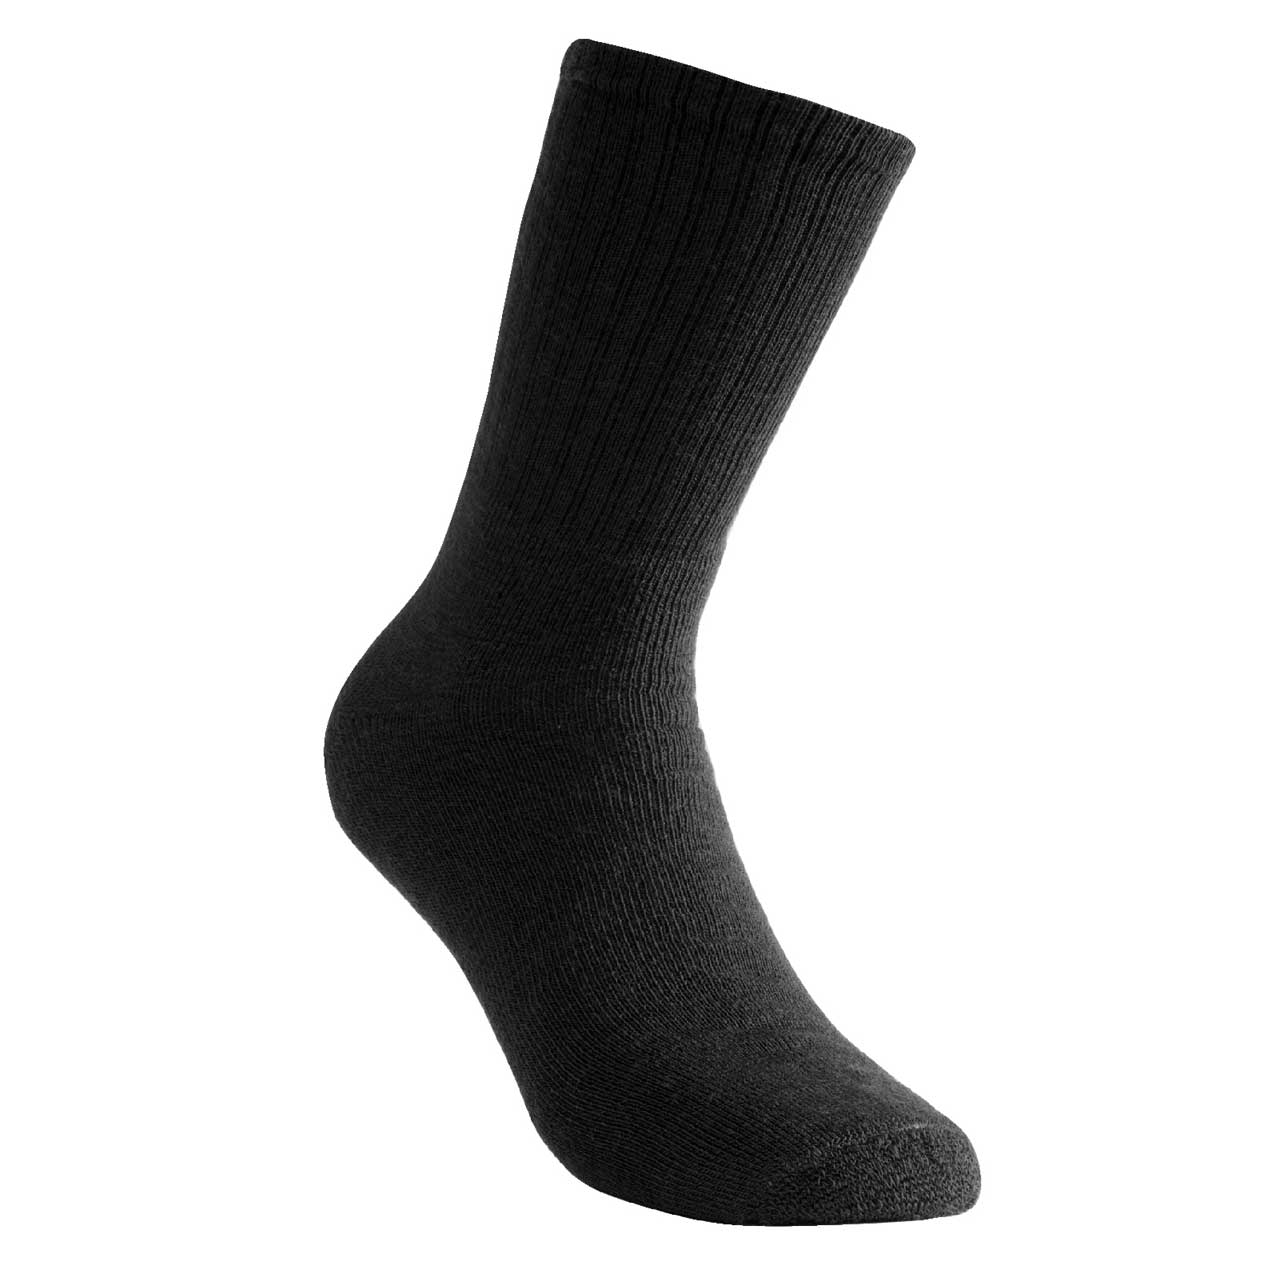 Woolpower Socken 200 - schwarz, 45-48